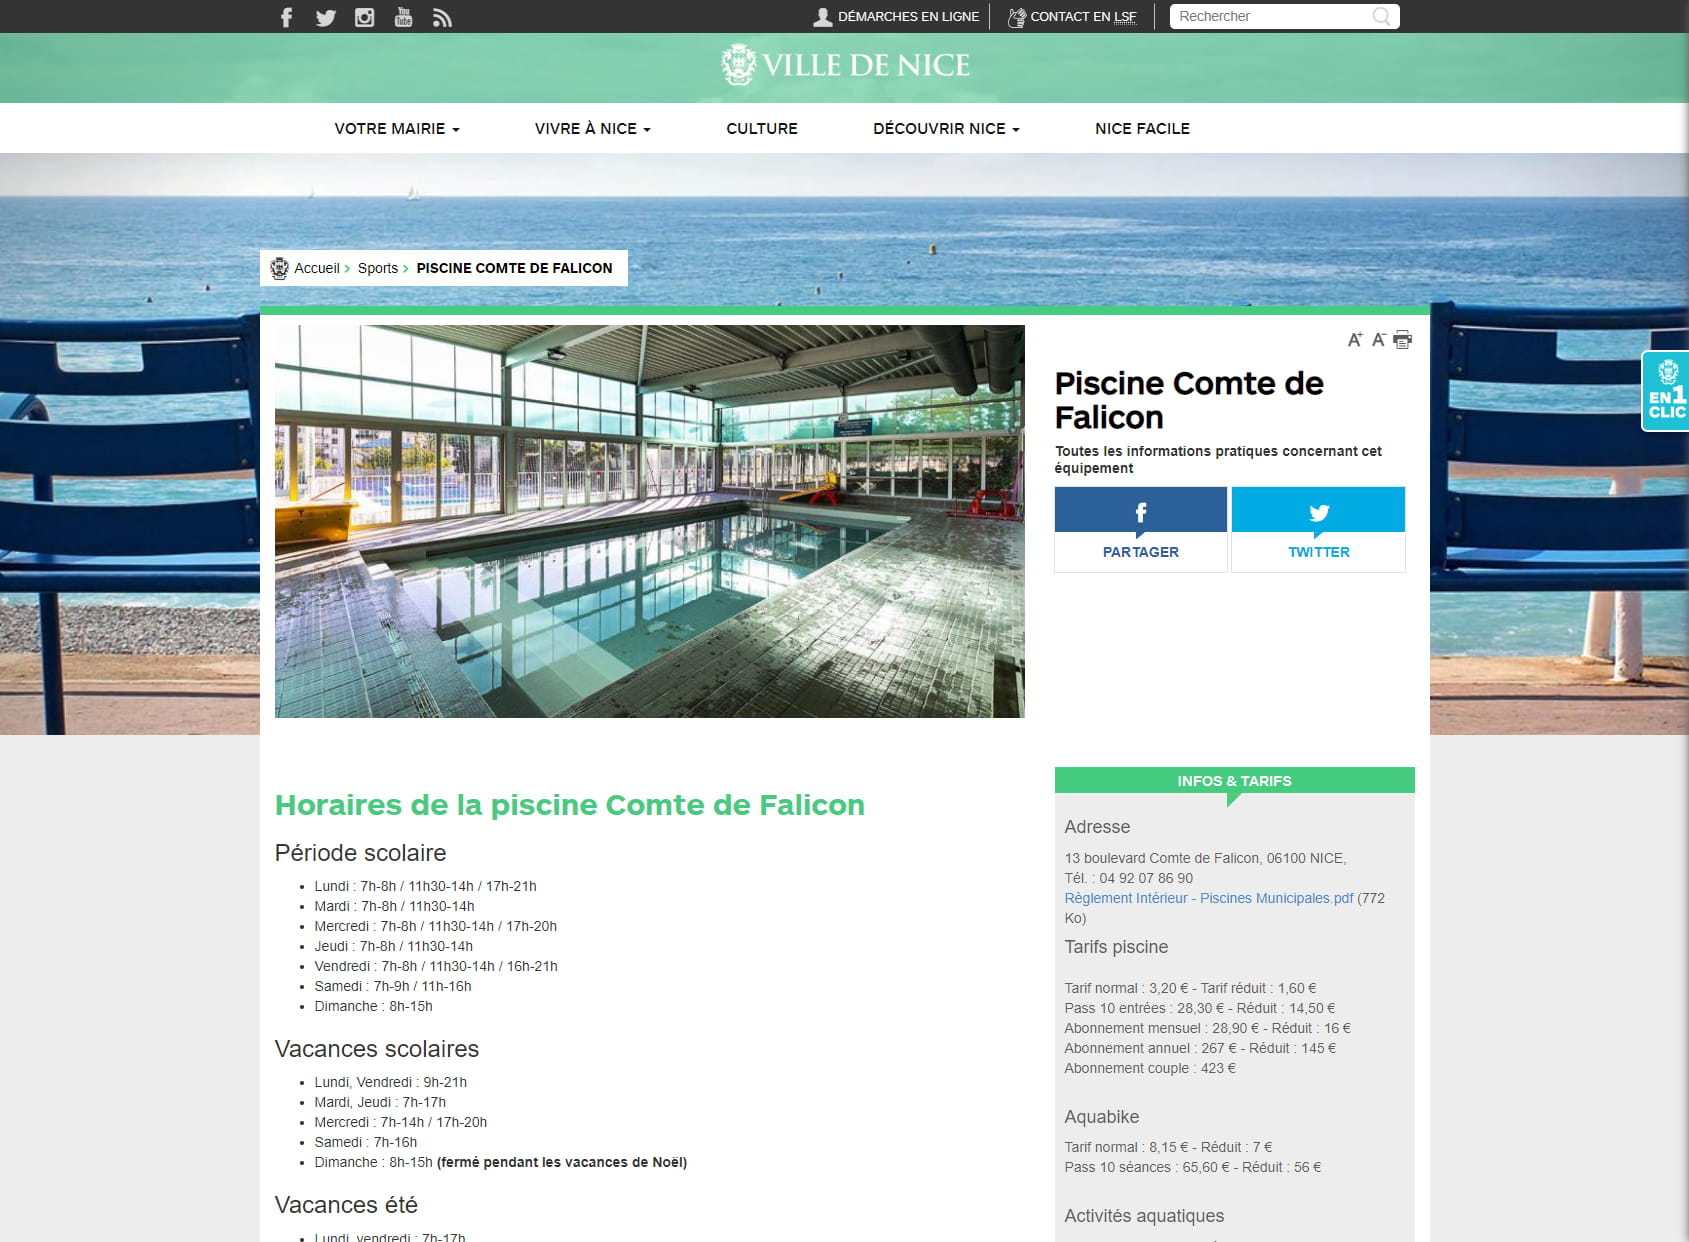 Swimming pool Comte de Falicon